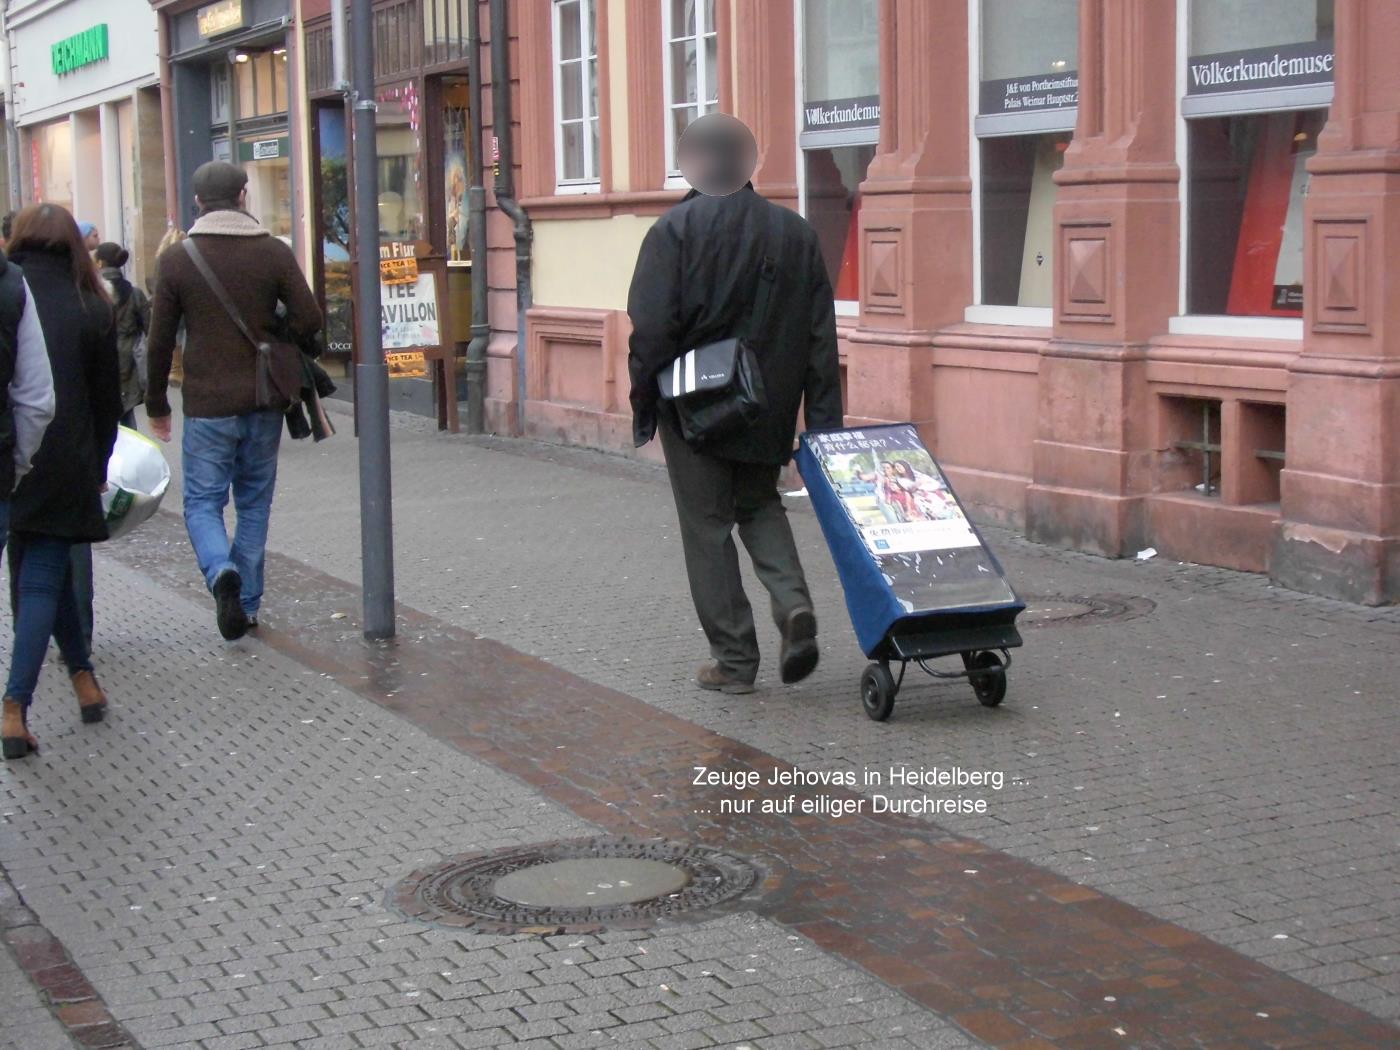 Jehovas Zeuge in Heidelberg auf der Flucht vor Weihnachten